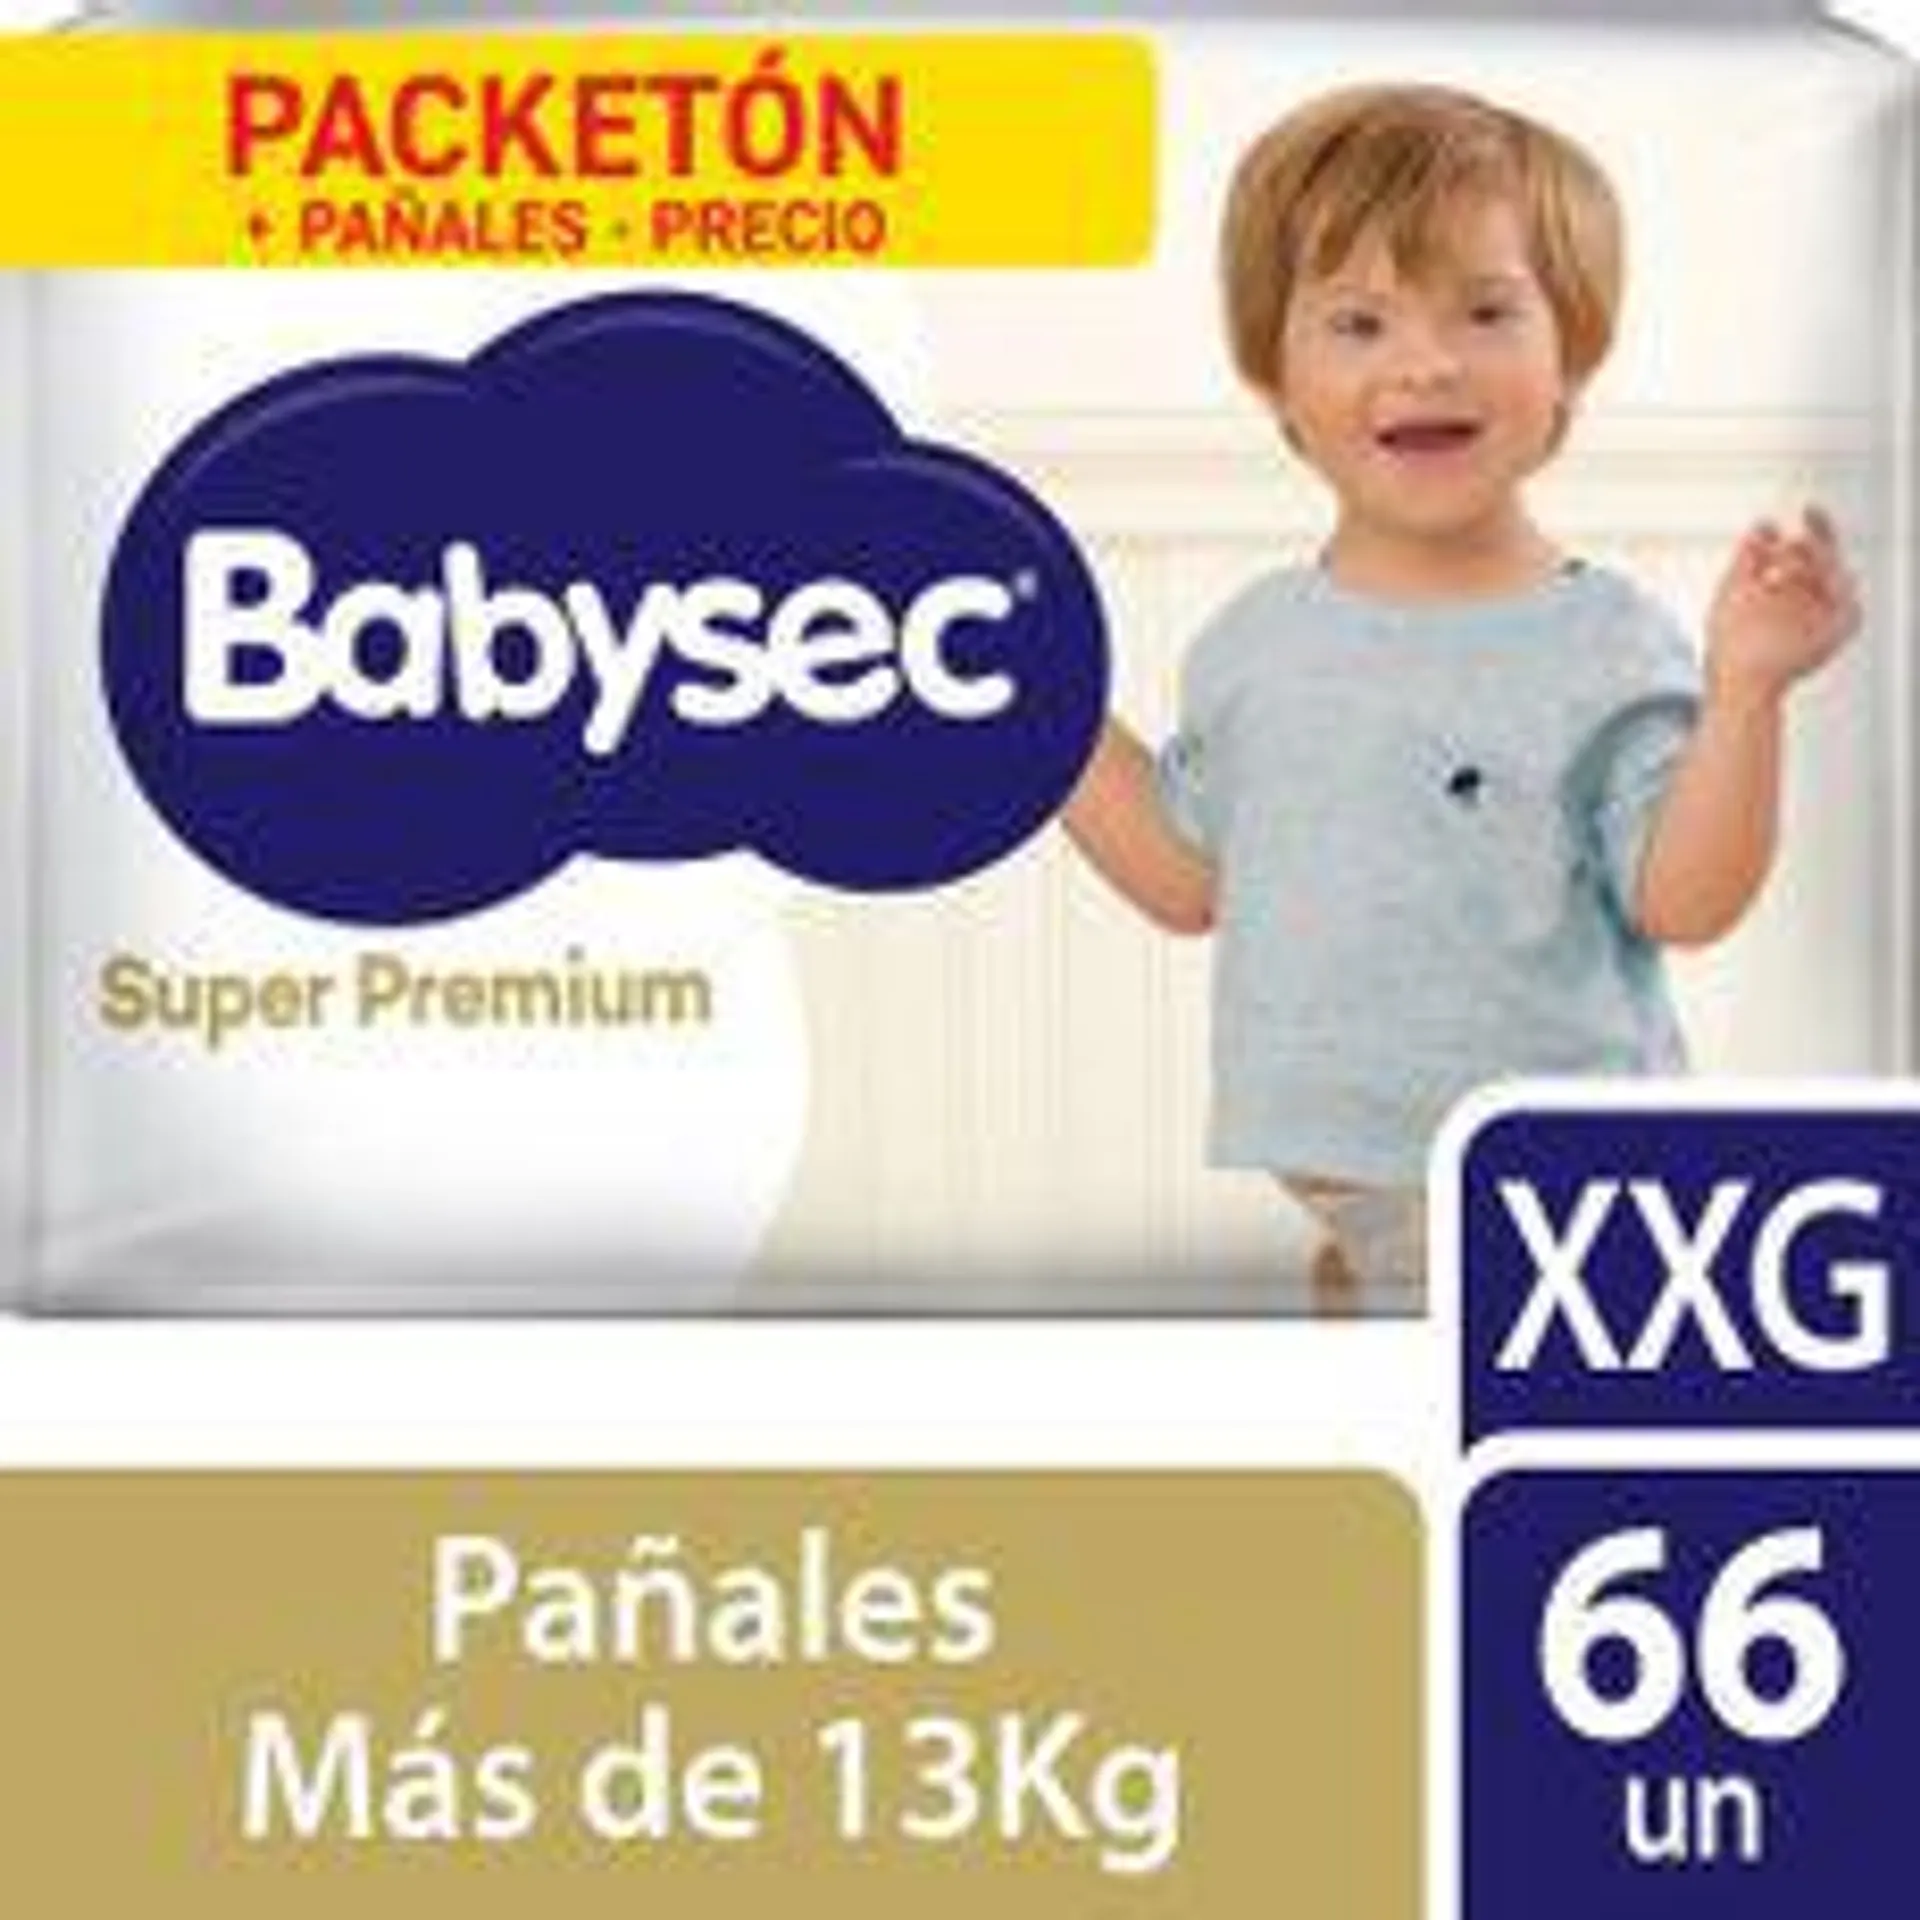 Pañales para Bebé Babysec Super Premium Talla XXG 66un